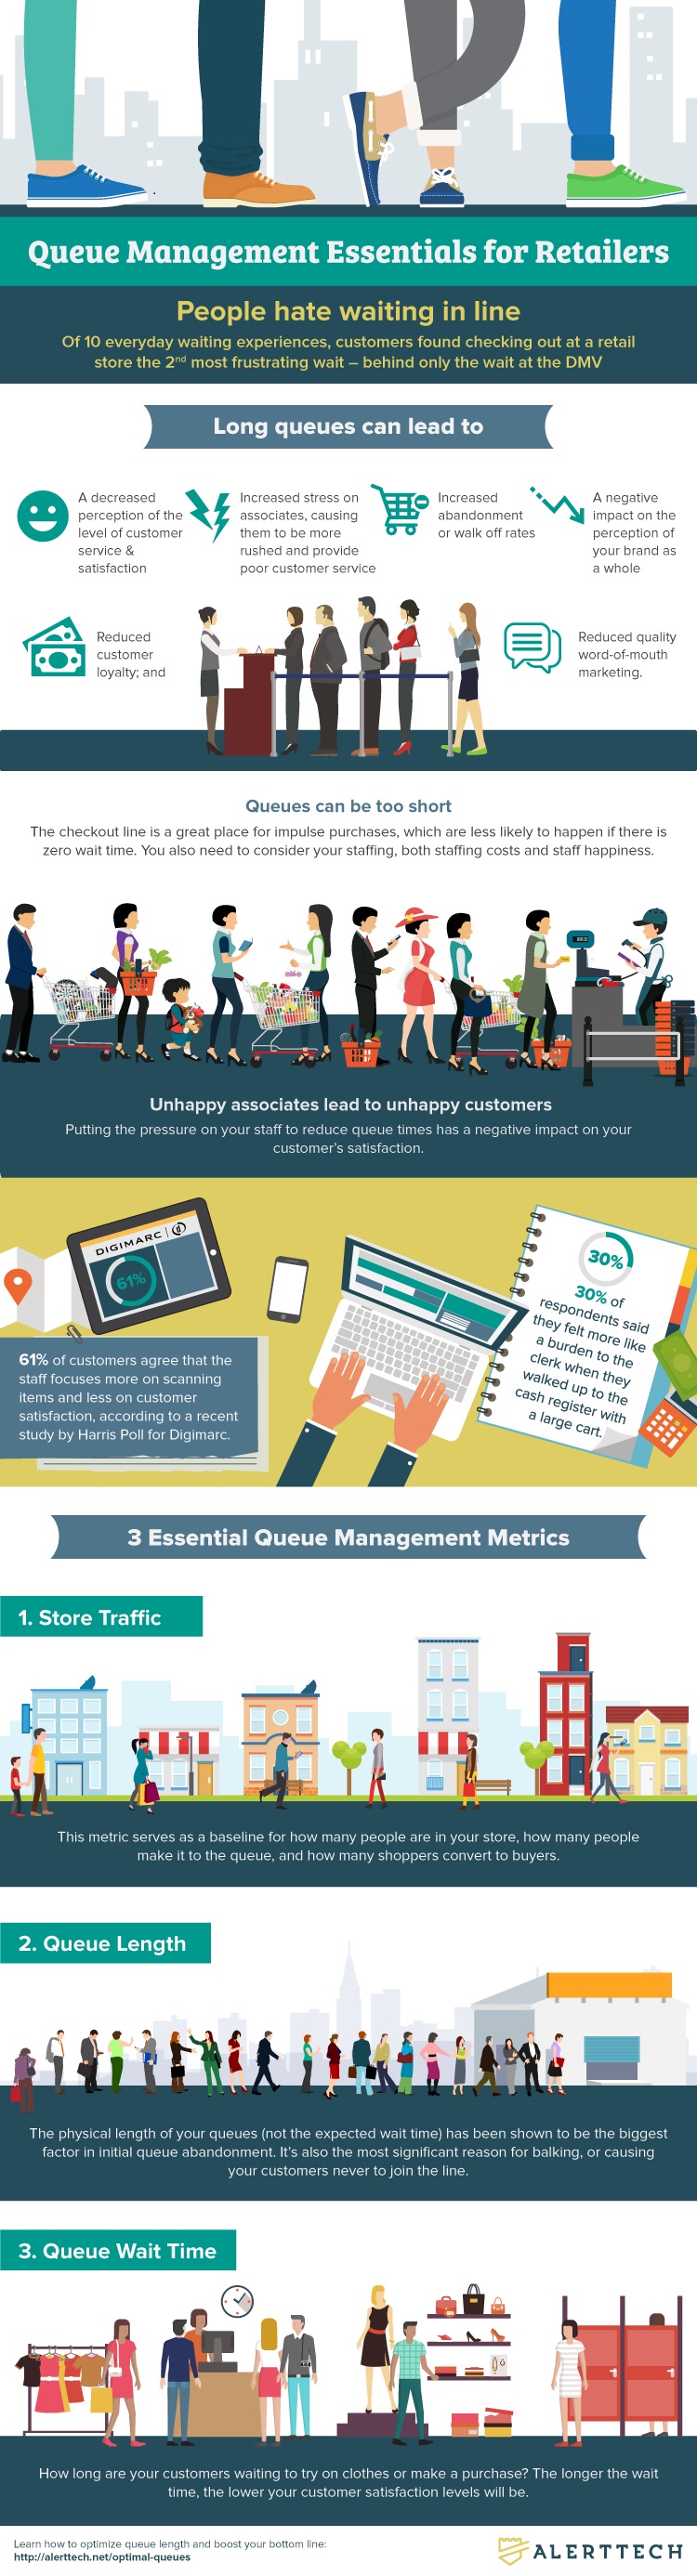 Queue Management infographic